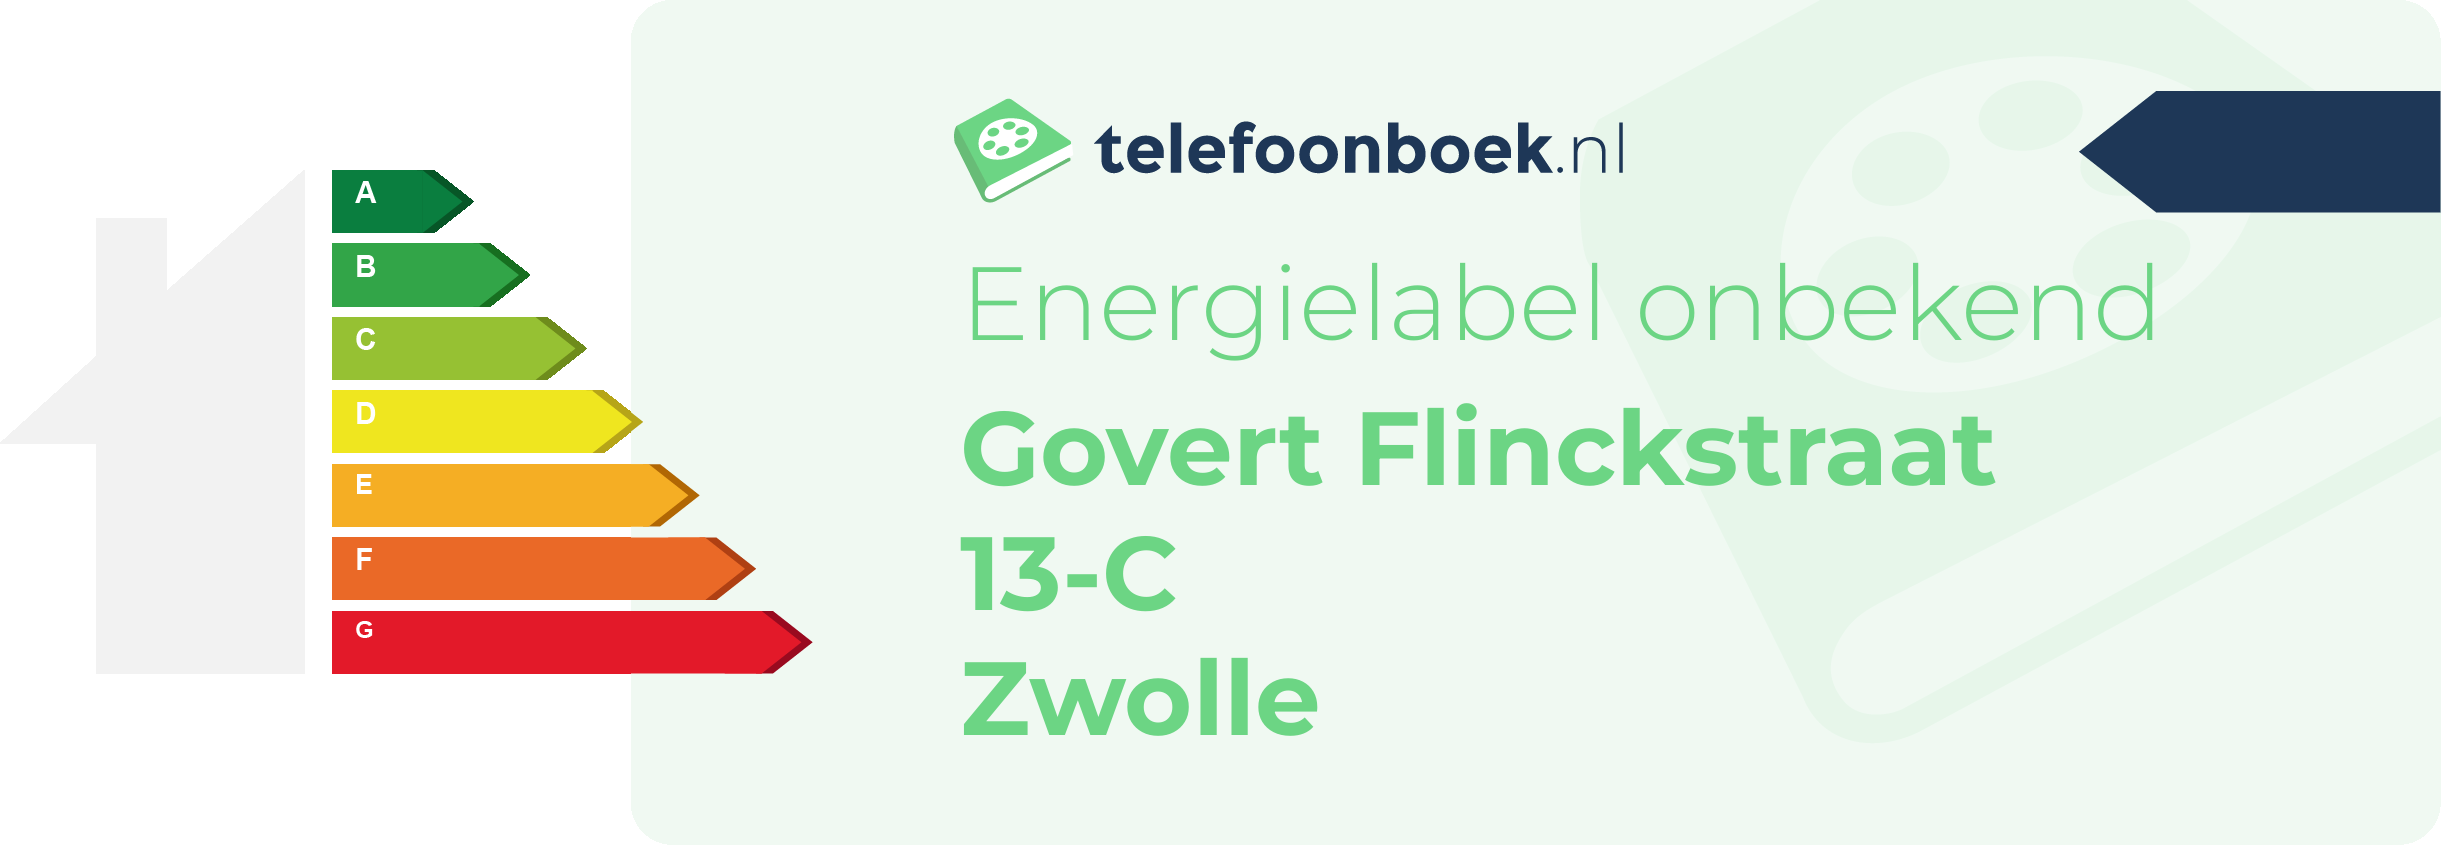 Energielabel Govert Flinckstraat 13-C Zwolle